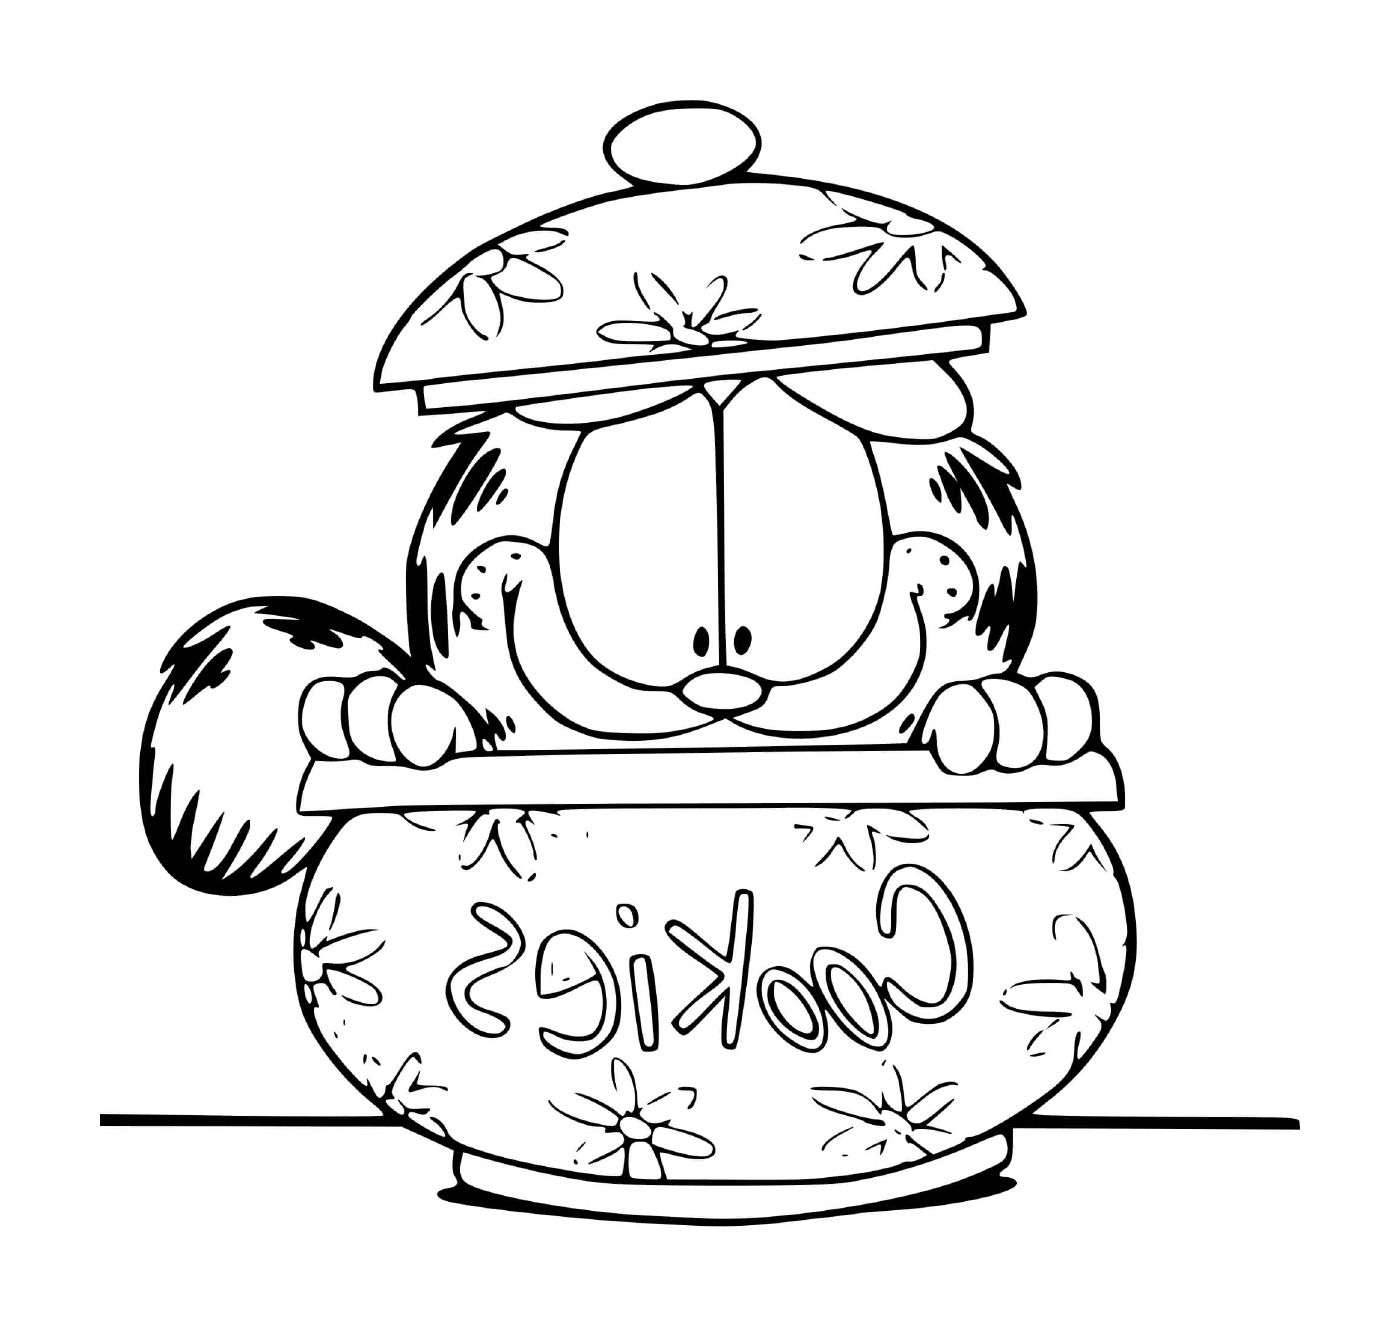  Garfield versteckt sich in einer Cookie-Box 